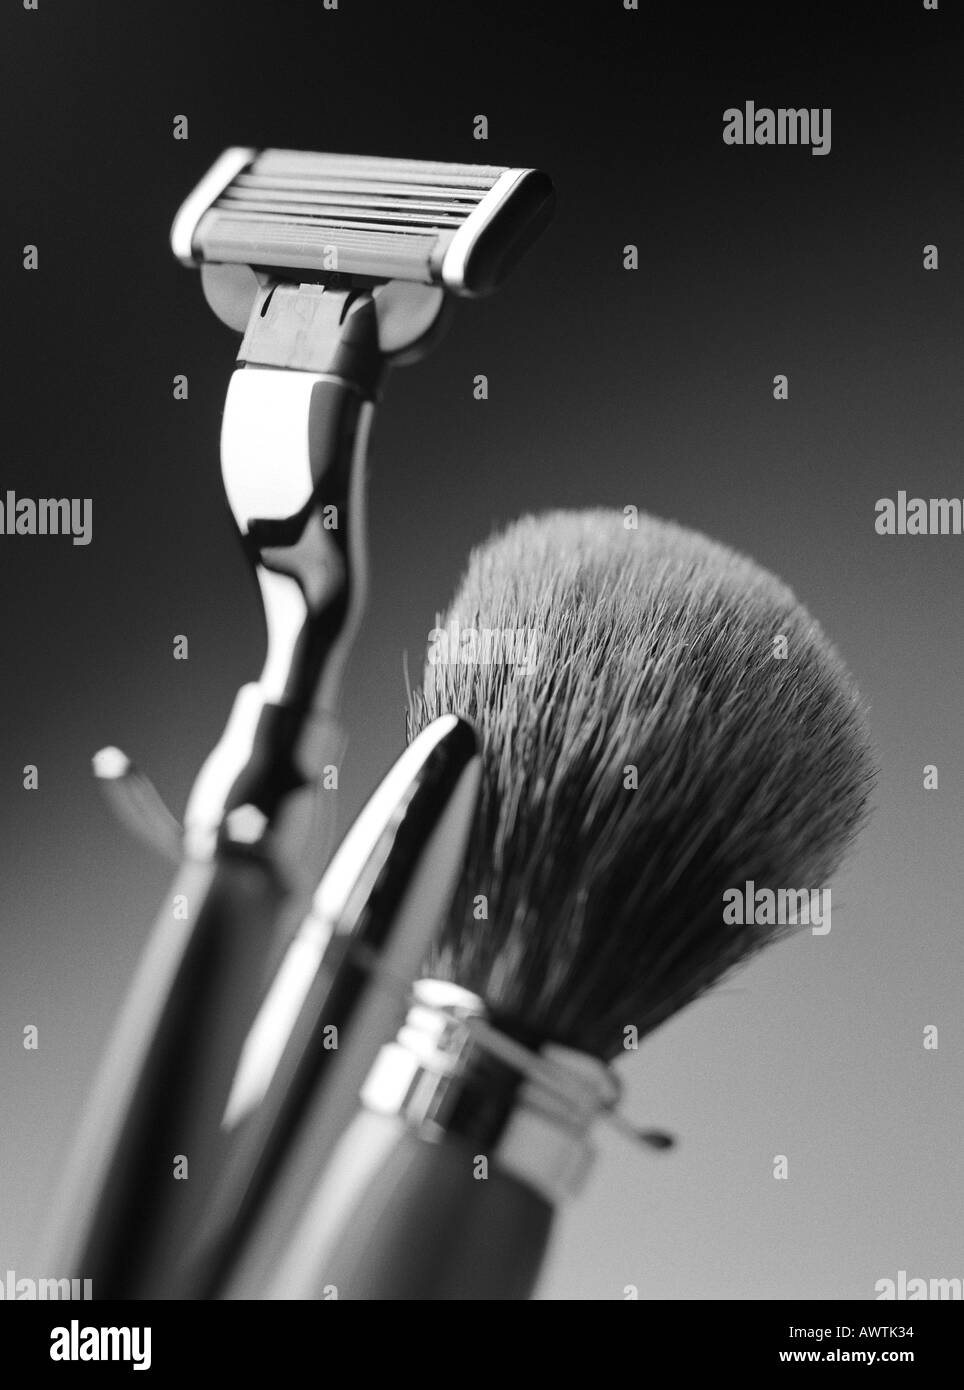 Rasiermesser und Rasierpinsel, close-up Stockfoto